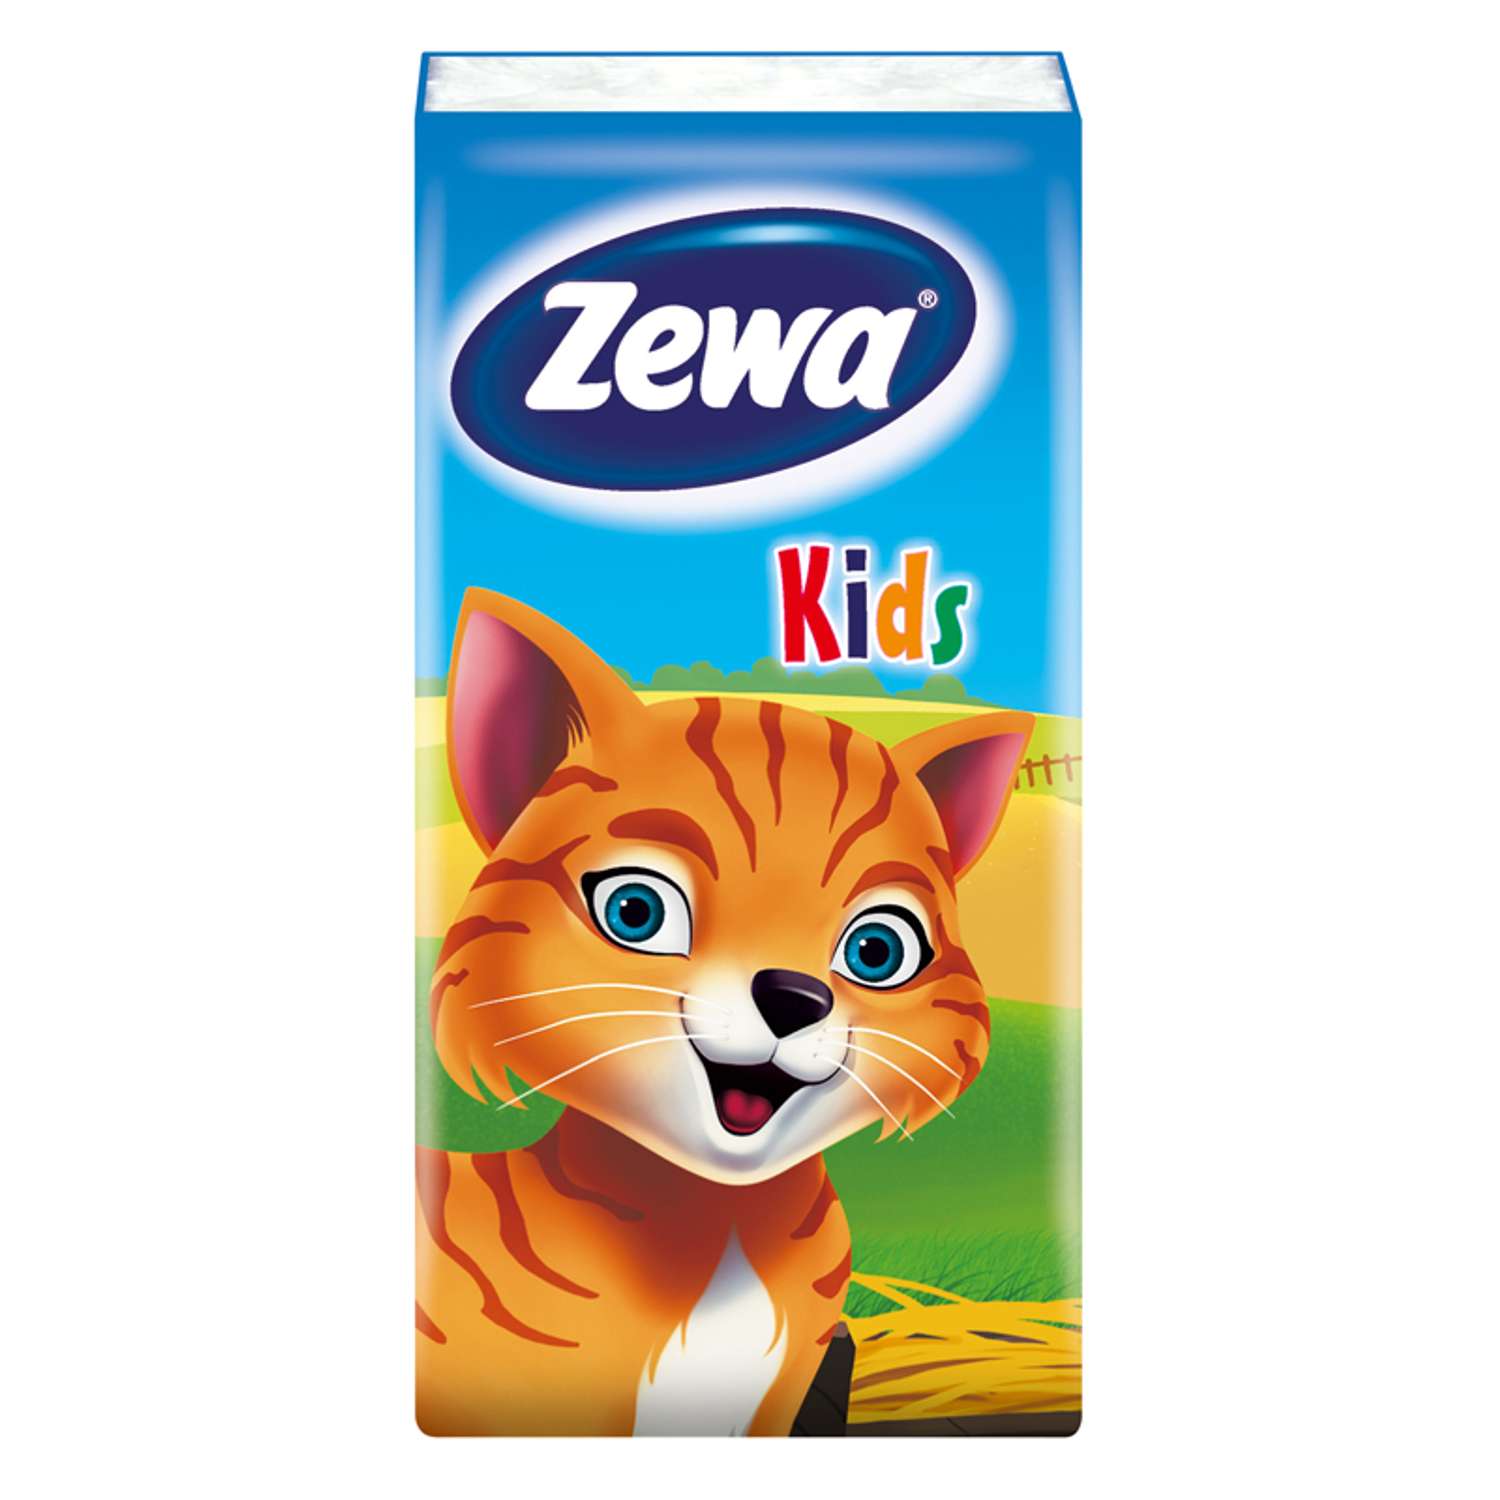 Платки носовые Zewa Kids 3 слоя 10шт в ассортименте 51122 - фото 6